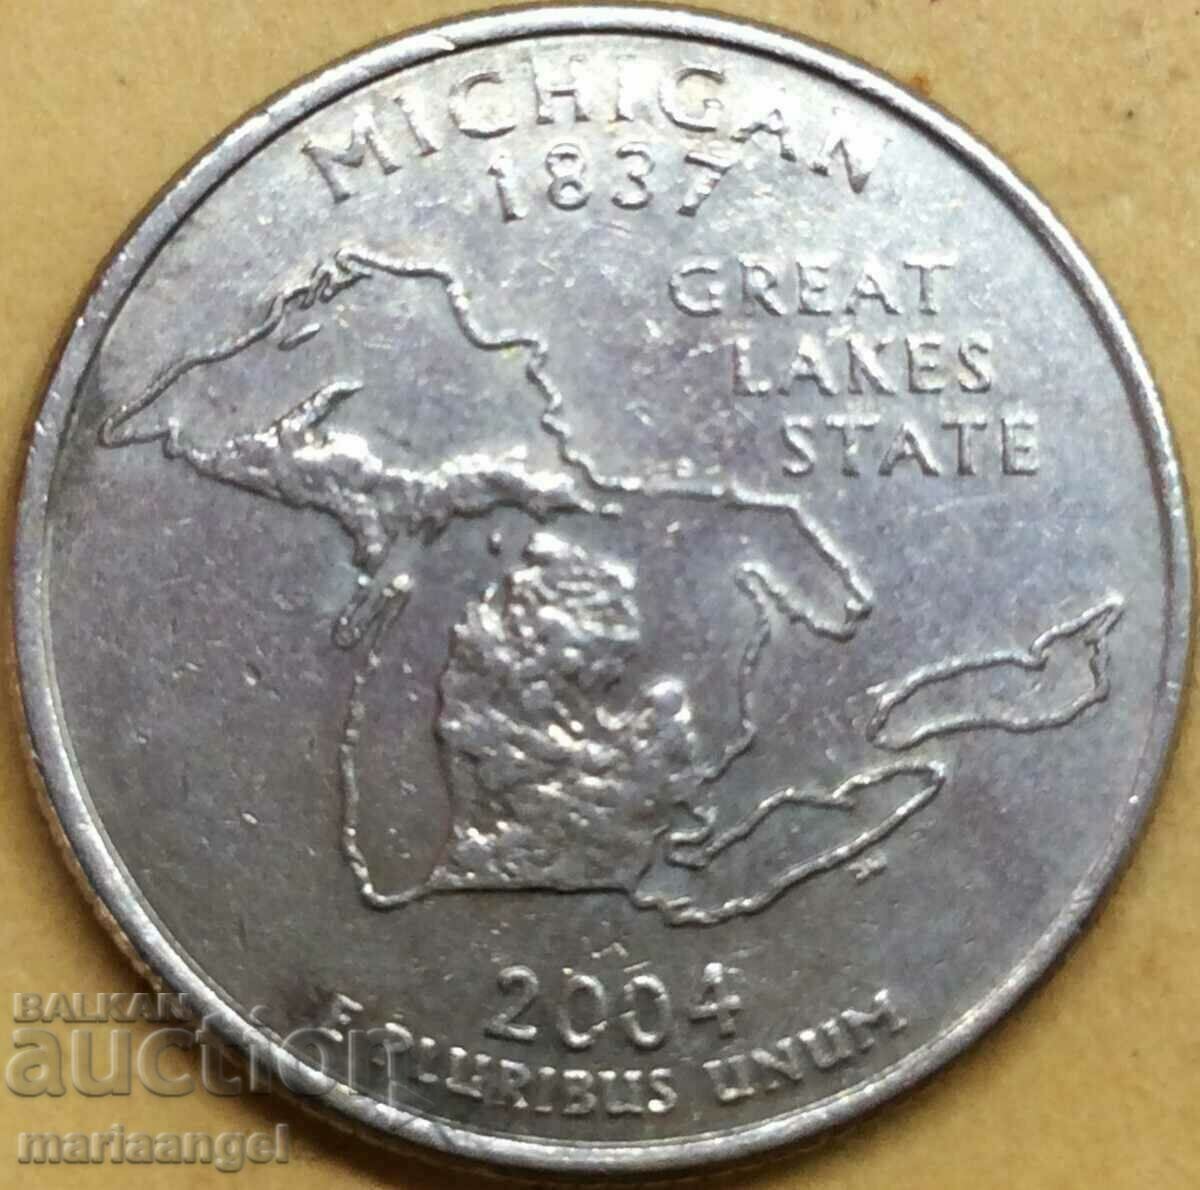 Τρίμηνο Δολάριο ΗΠΑ 2004